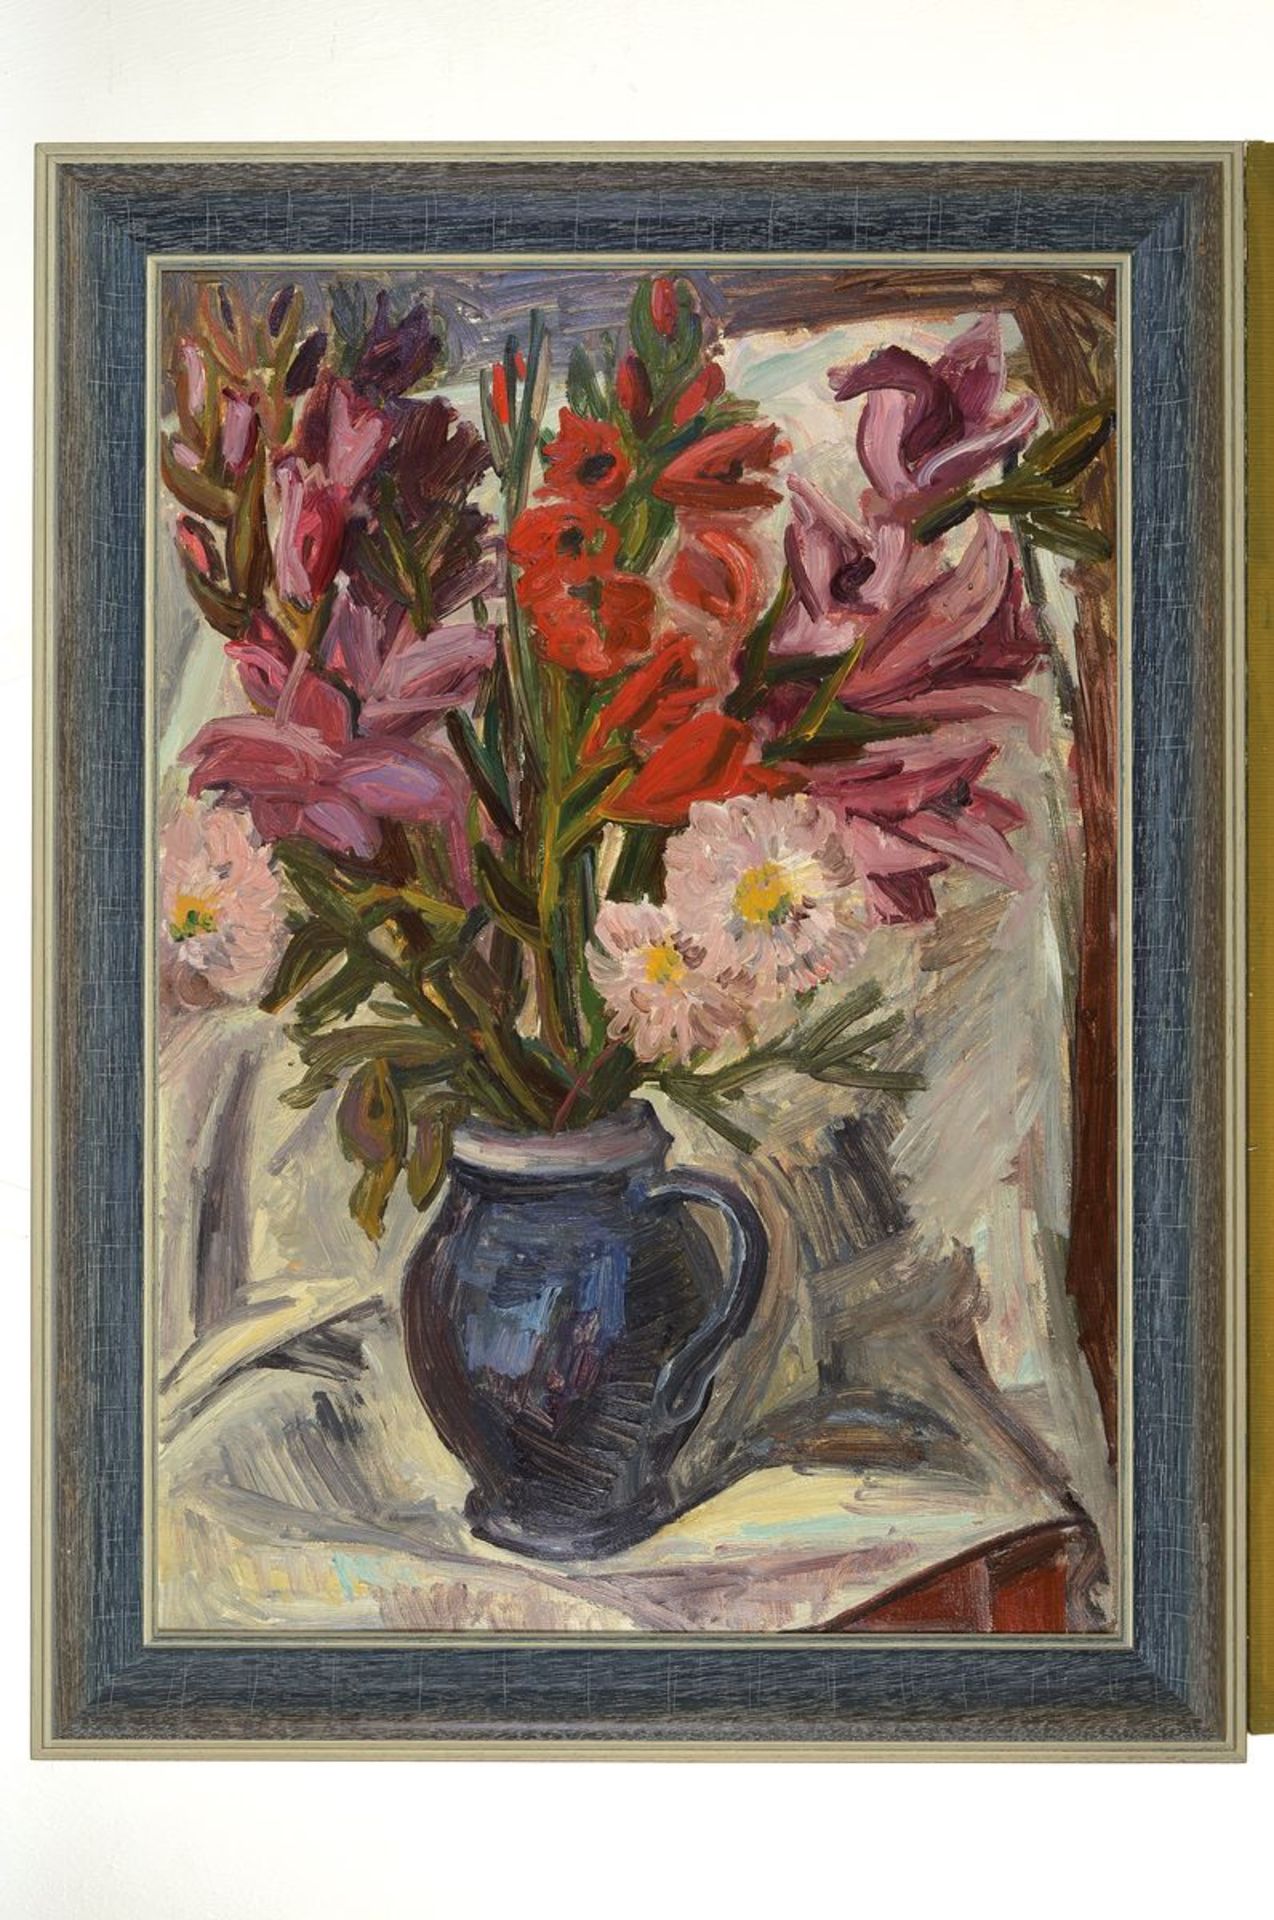 Robert Rabolt, 1899 Frankfurt/M.-1974, Starnberg, Studium an der Akademie München, hier: Blumen in - Bild 2 aus 2